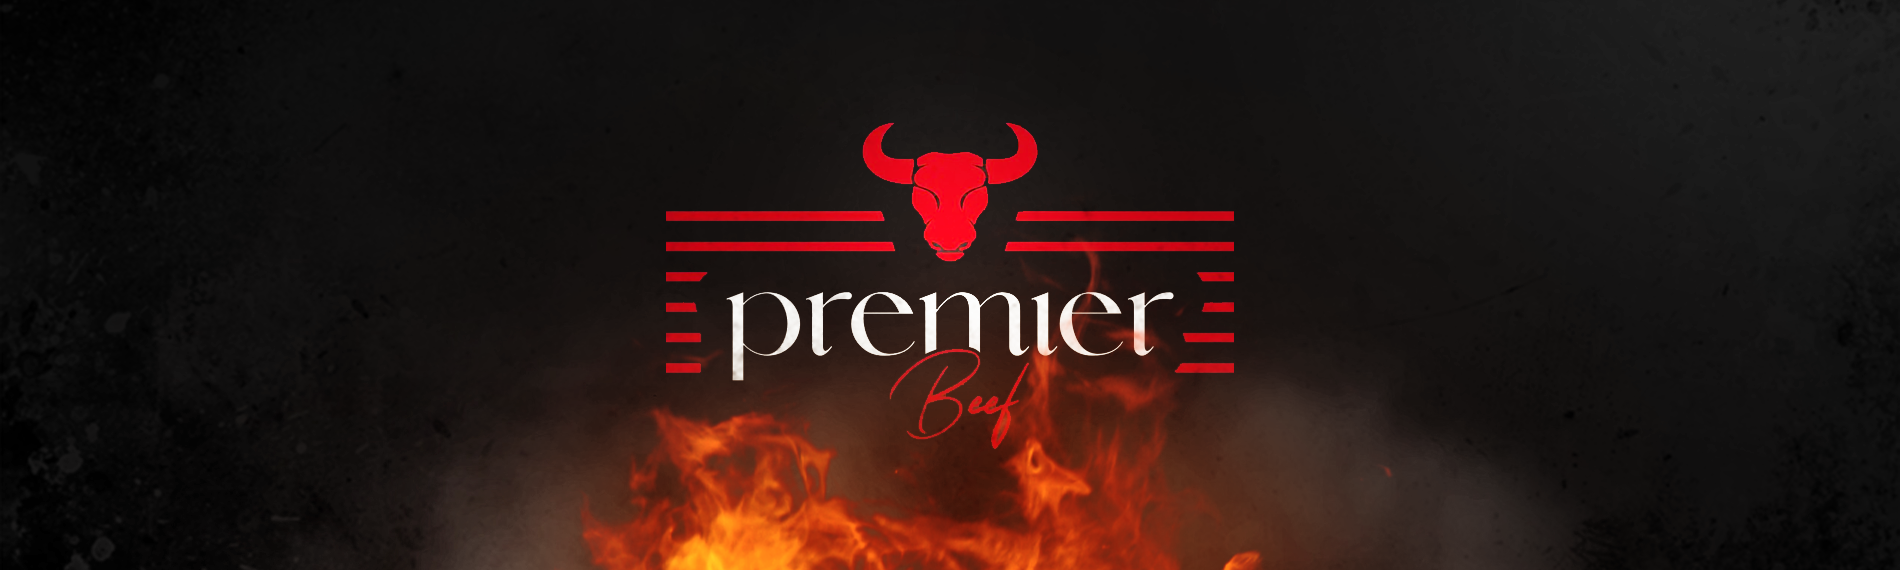 Premier Beef